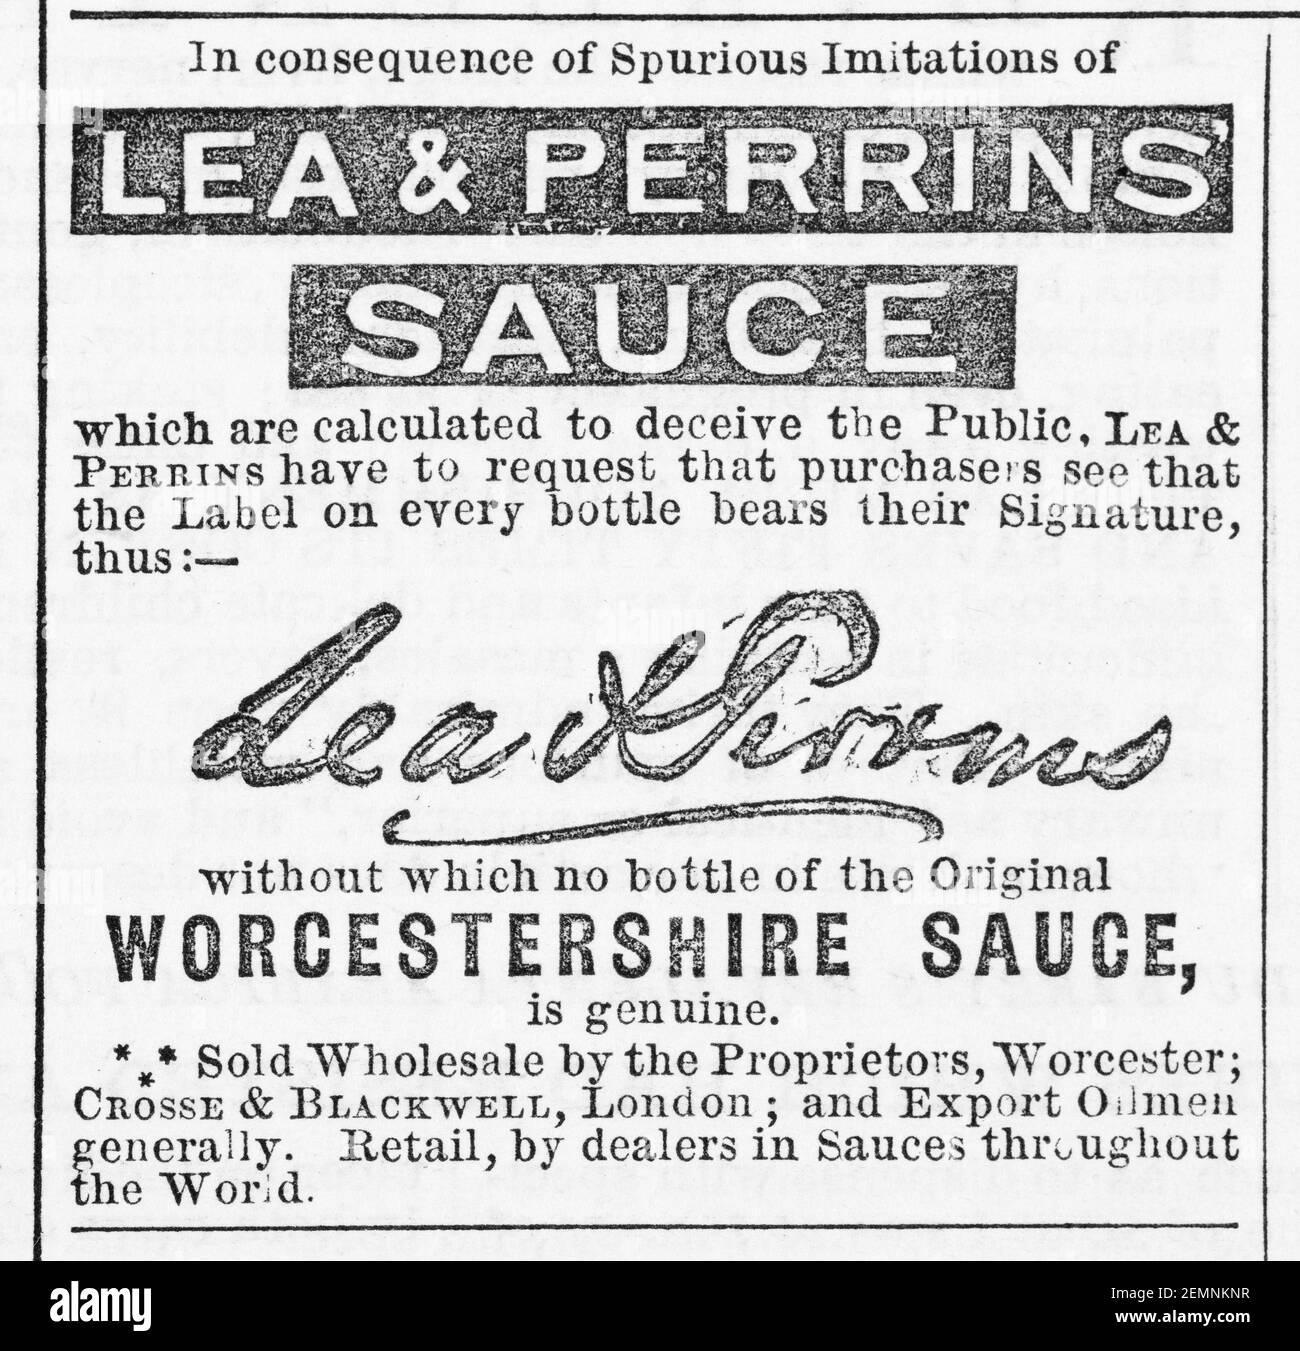 Vecchia rivista vittoriana giornale Lea & Perrin's Worcestershire Sauce spot da 1880 - prima dell'alba degli standard pubblicitari. Foto Stock